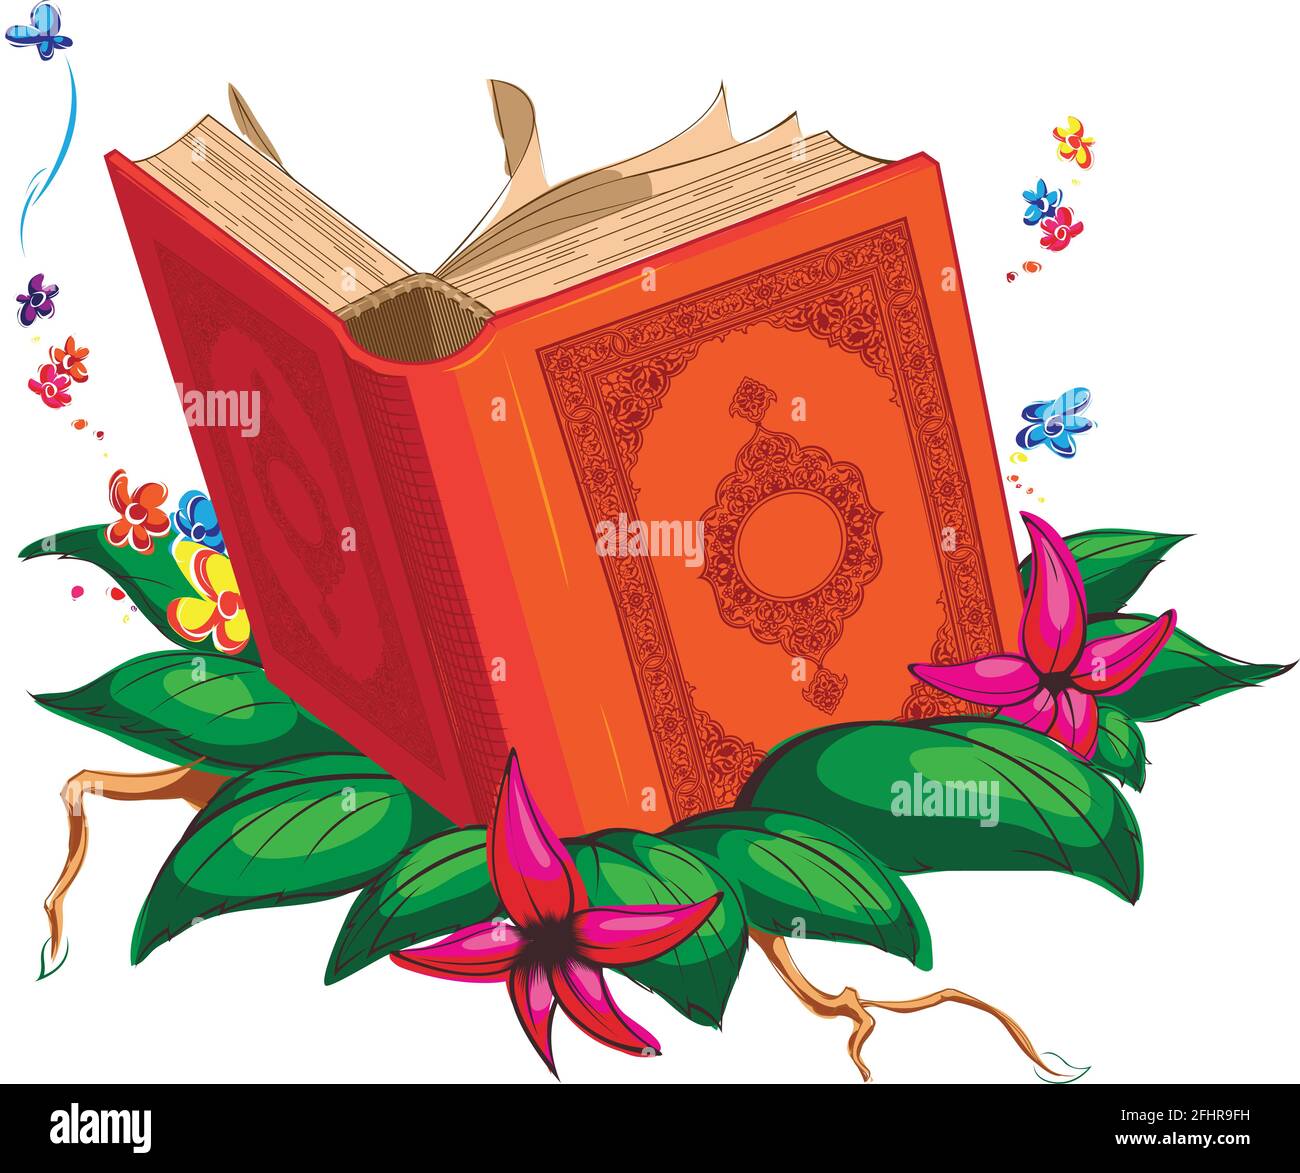 Muslim Ramadan Holy Book Quran Islamic Cartoon Arab Vector Drawing Stock  Vector Image & Art - Alamy